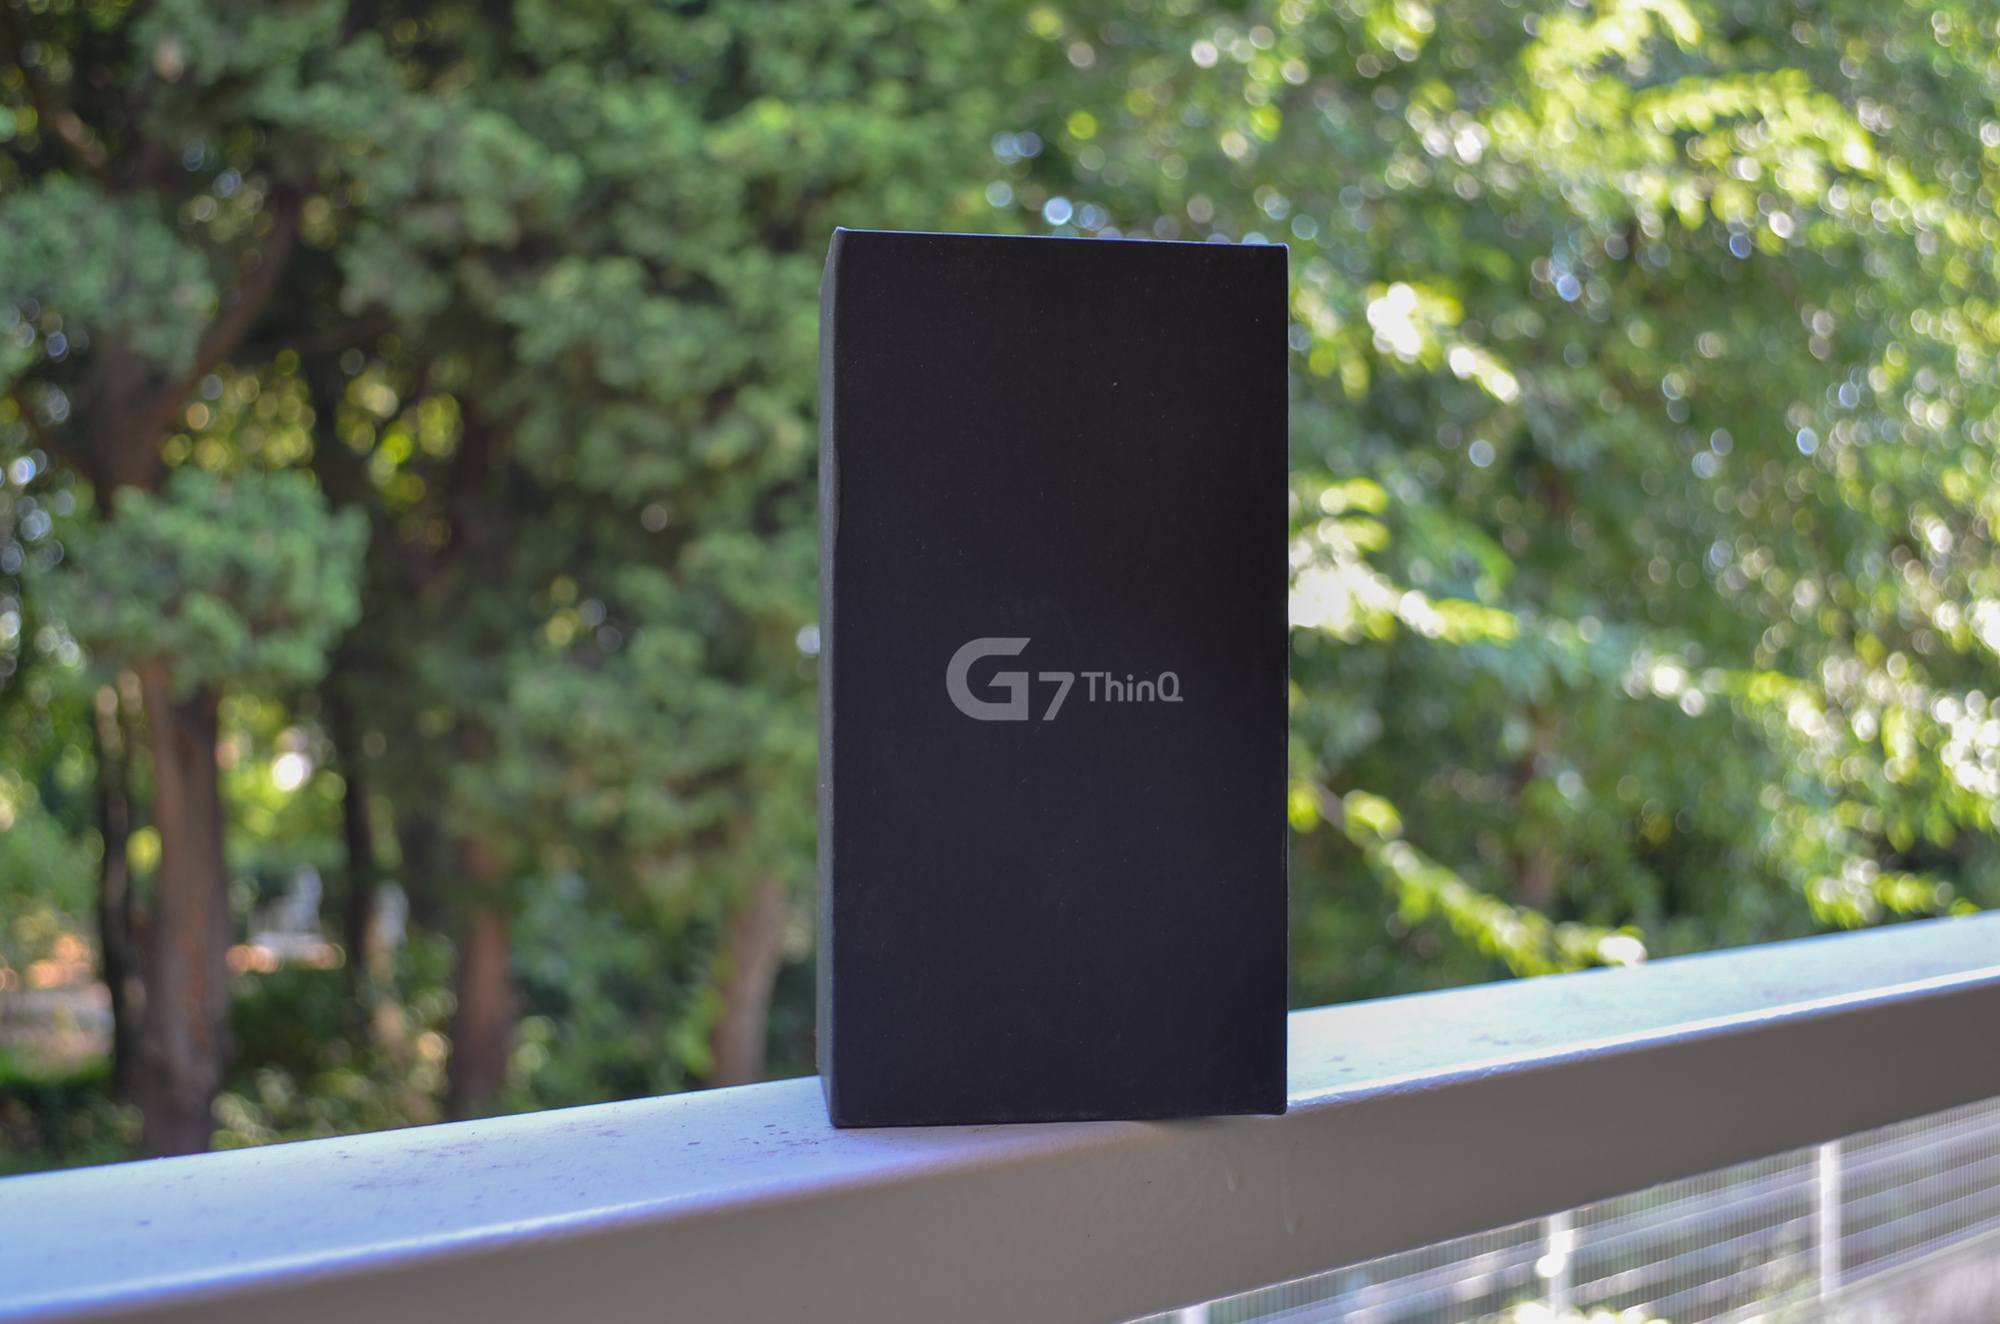 LG DSC 0396 Test – LG G7 ThinQ : Sur la pente de la réussite mais toujours pas Leader Android